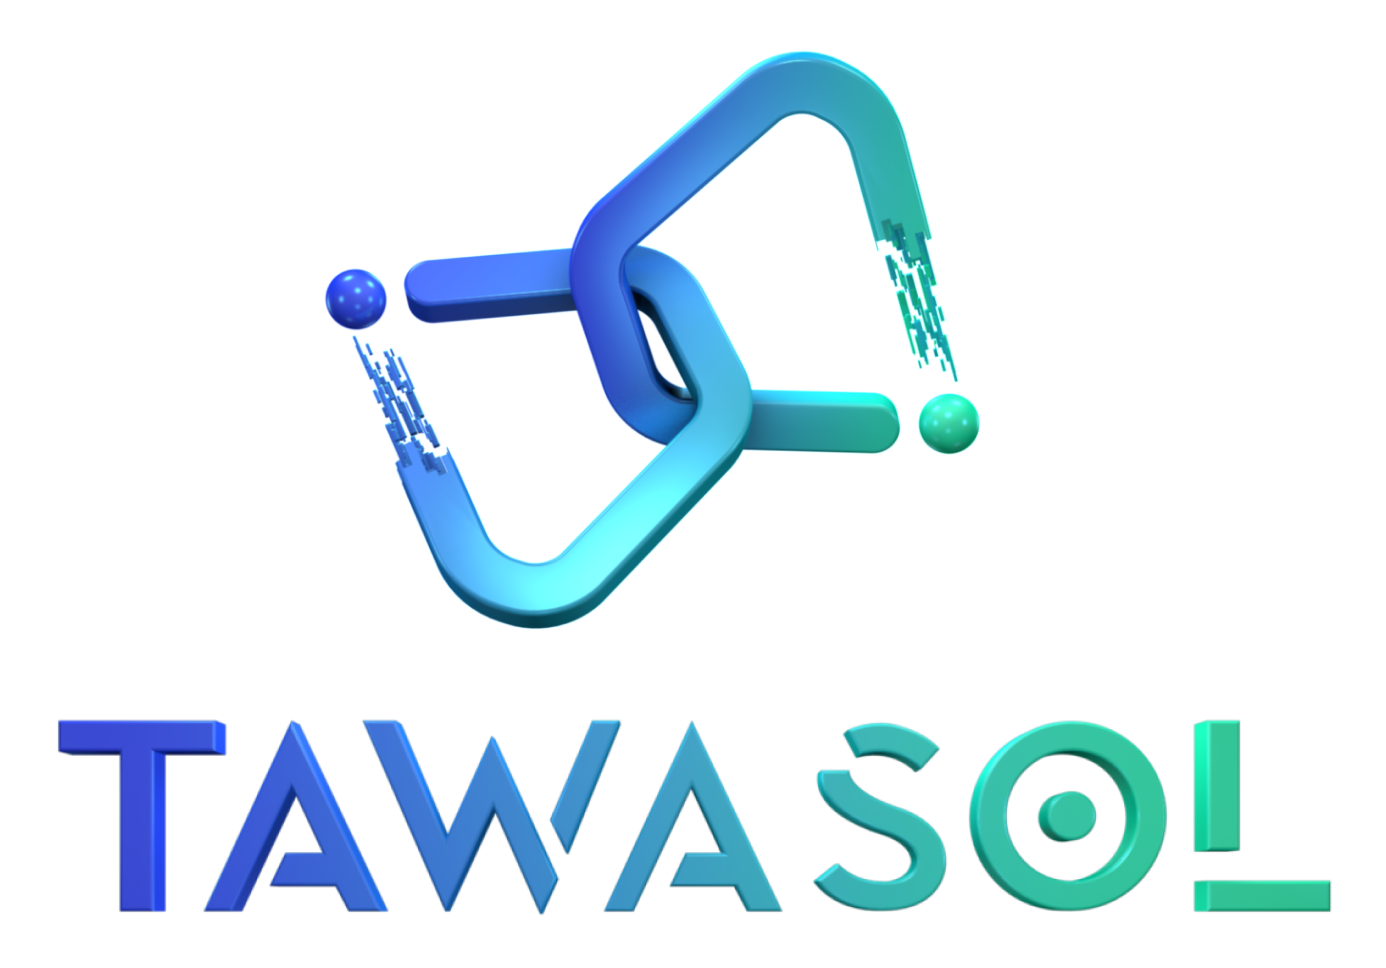 Tawasol Word And Logo